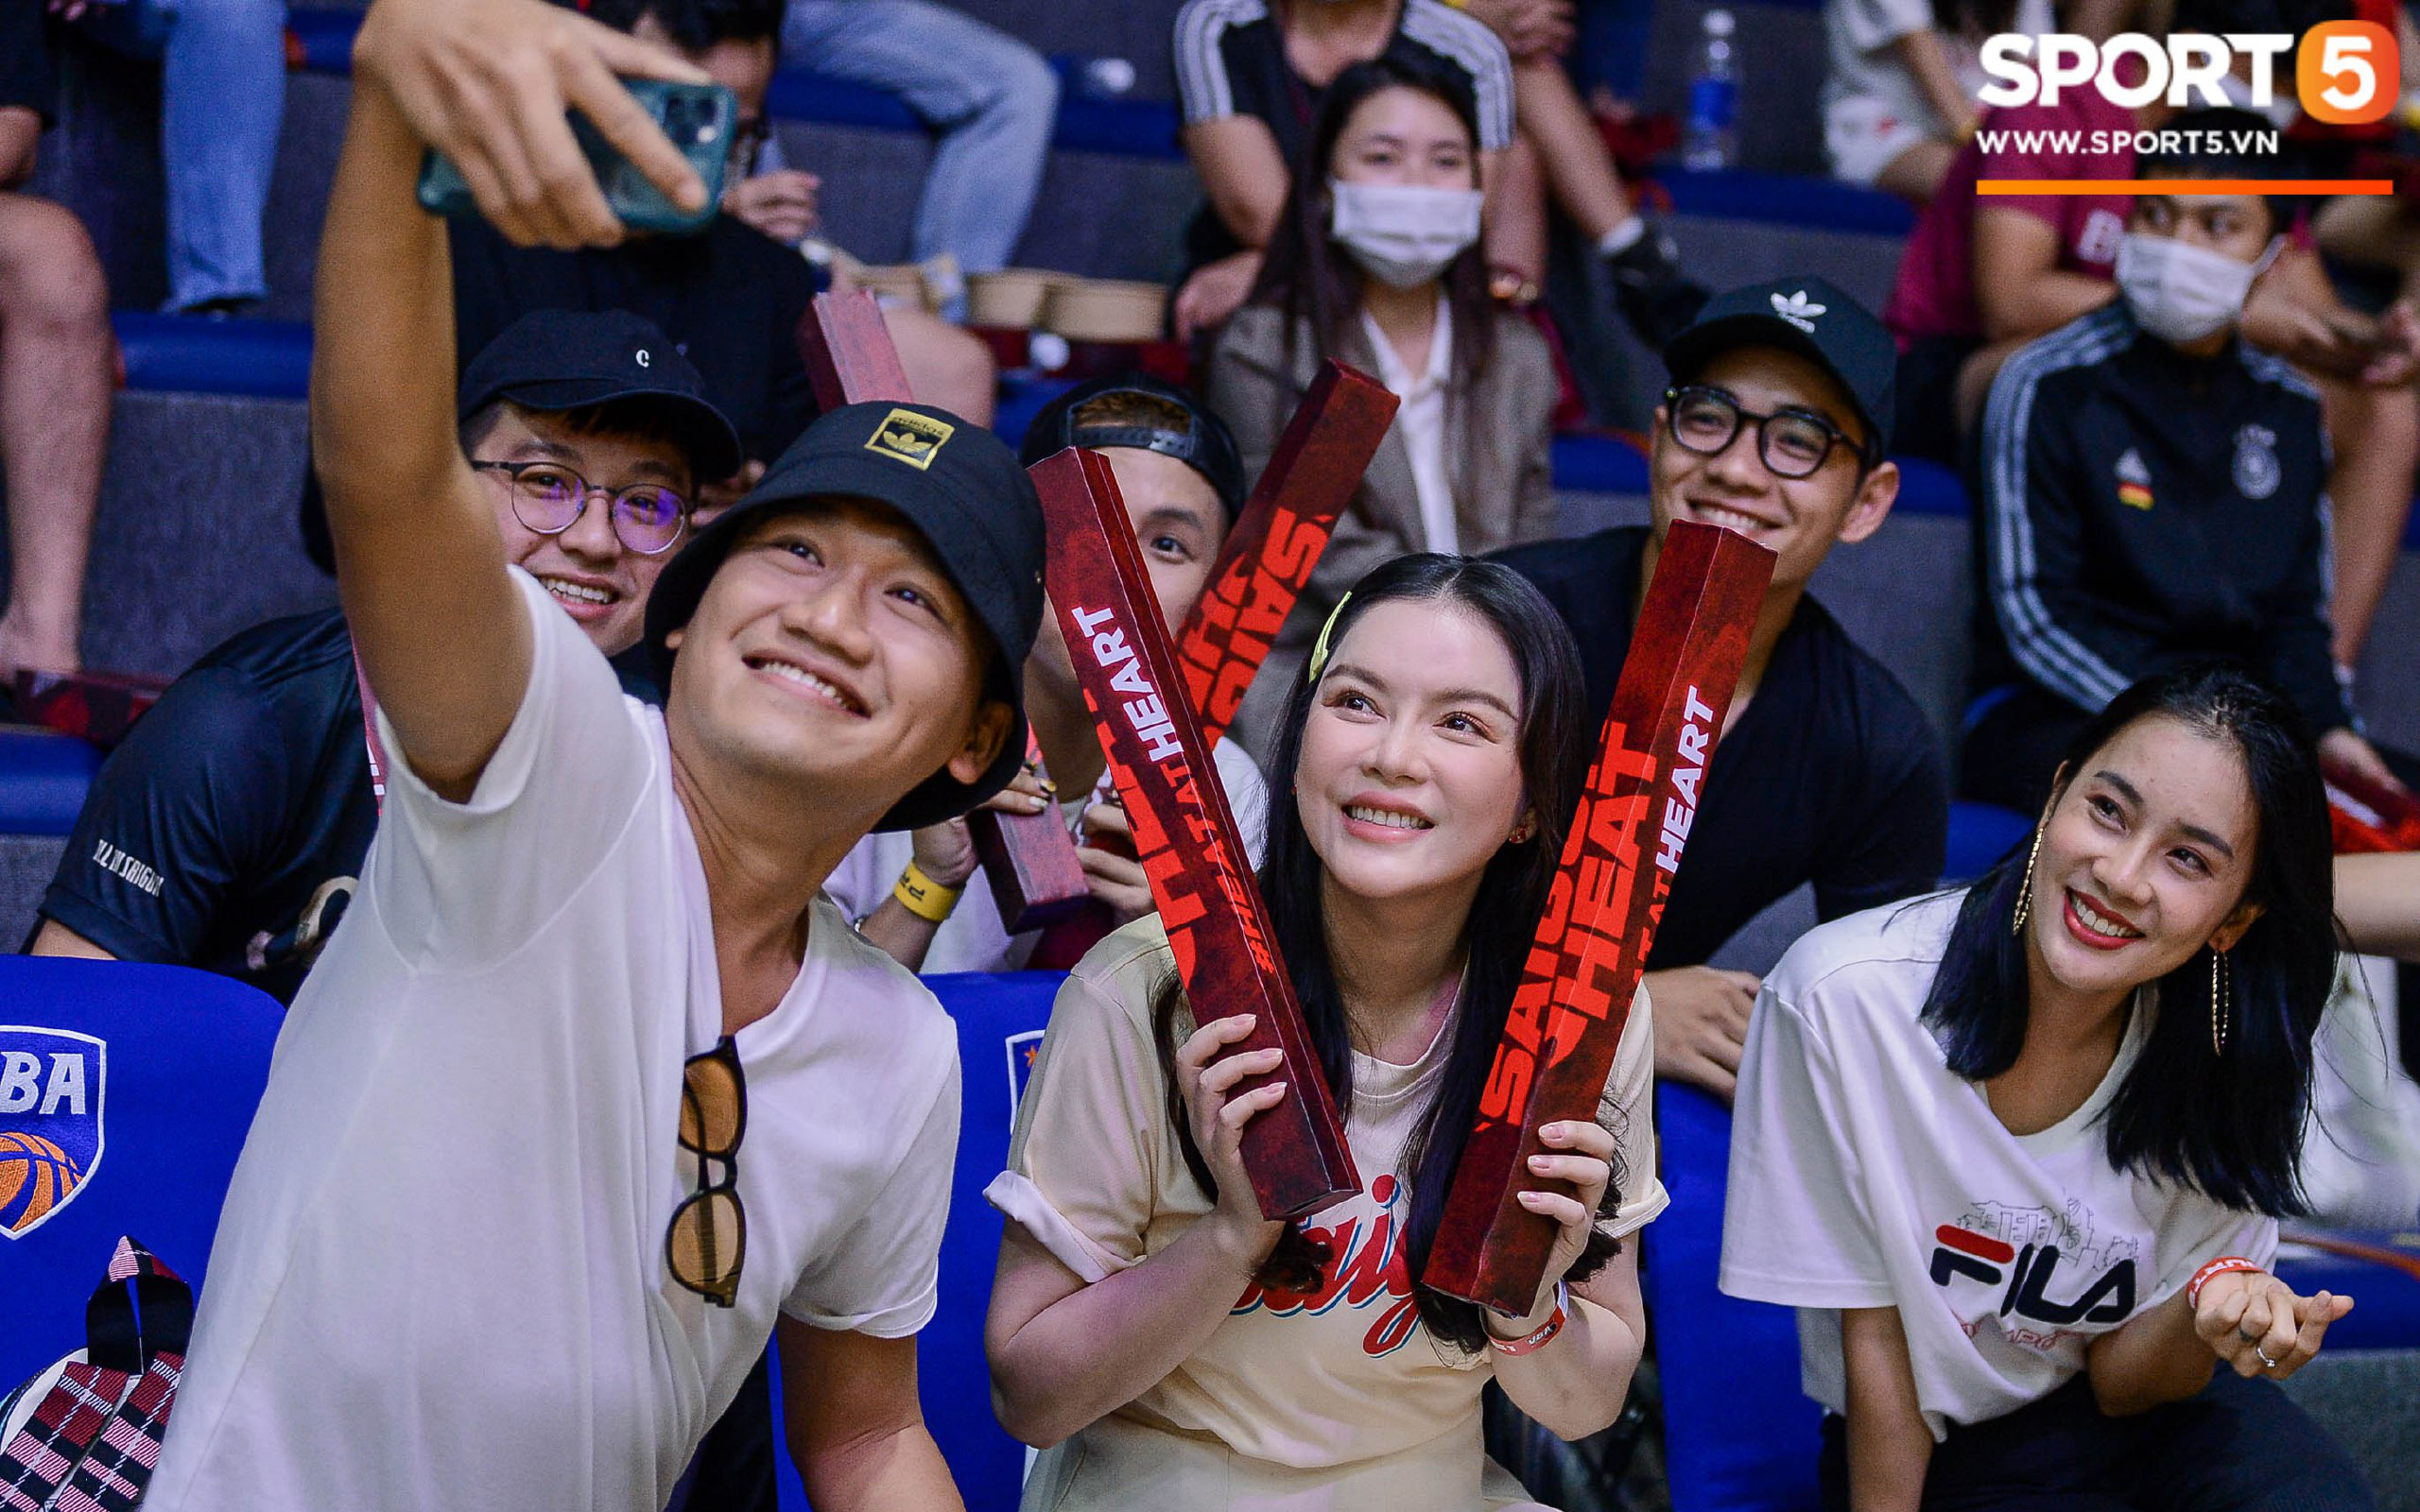 Dàn showbiz Việt đổ bộ hàng ghế khán giả tại game 4 VBA Finals 2020: Lý Nhã Kỳ diện outfit "không tuổi" đọ sắc bên á hậu Lệ Hằng